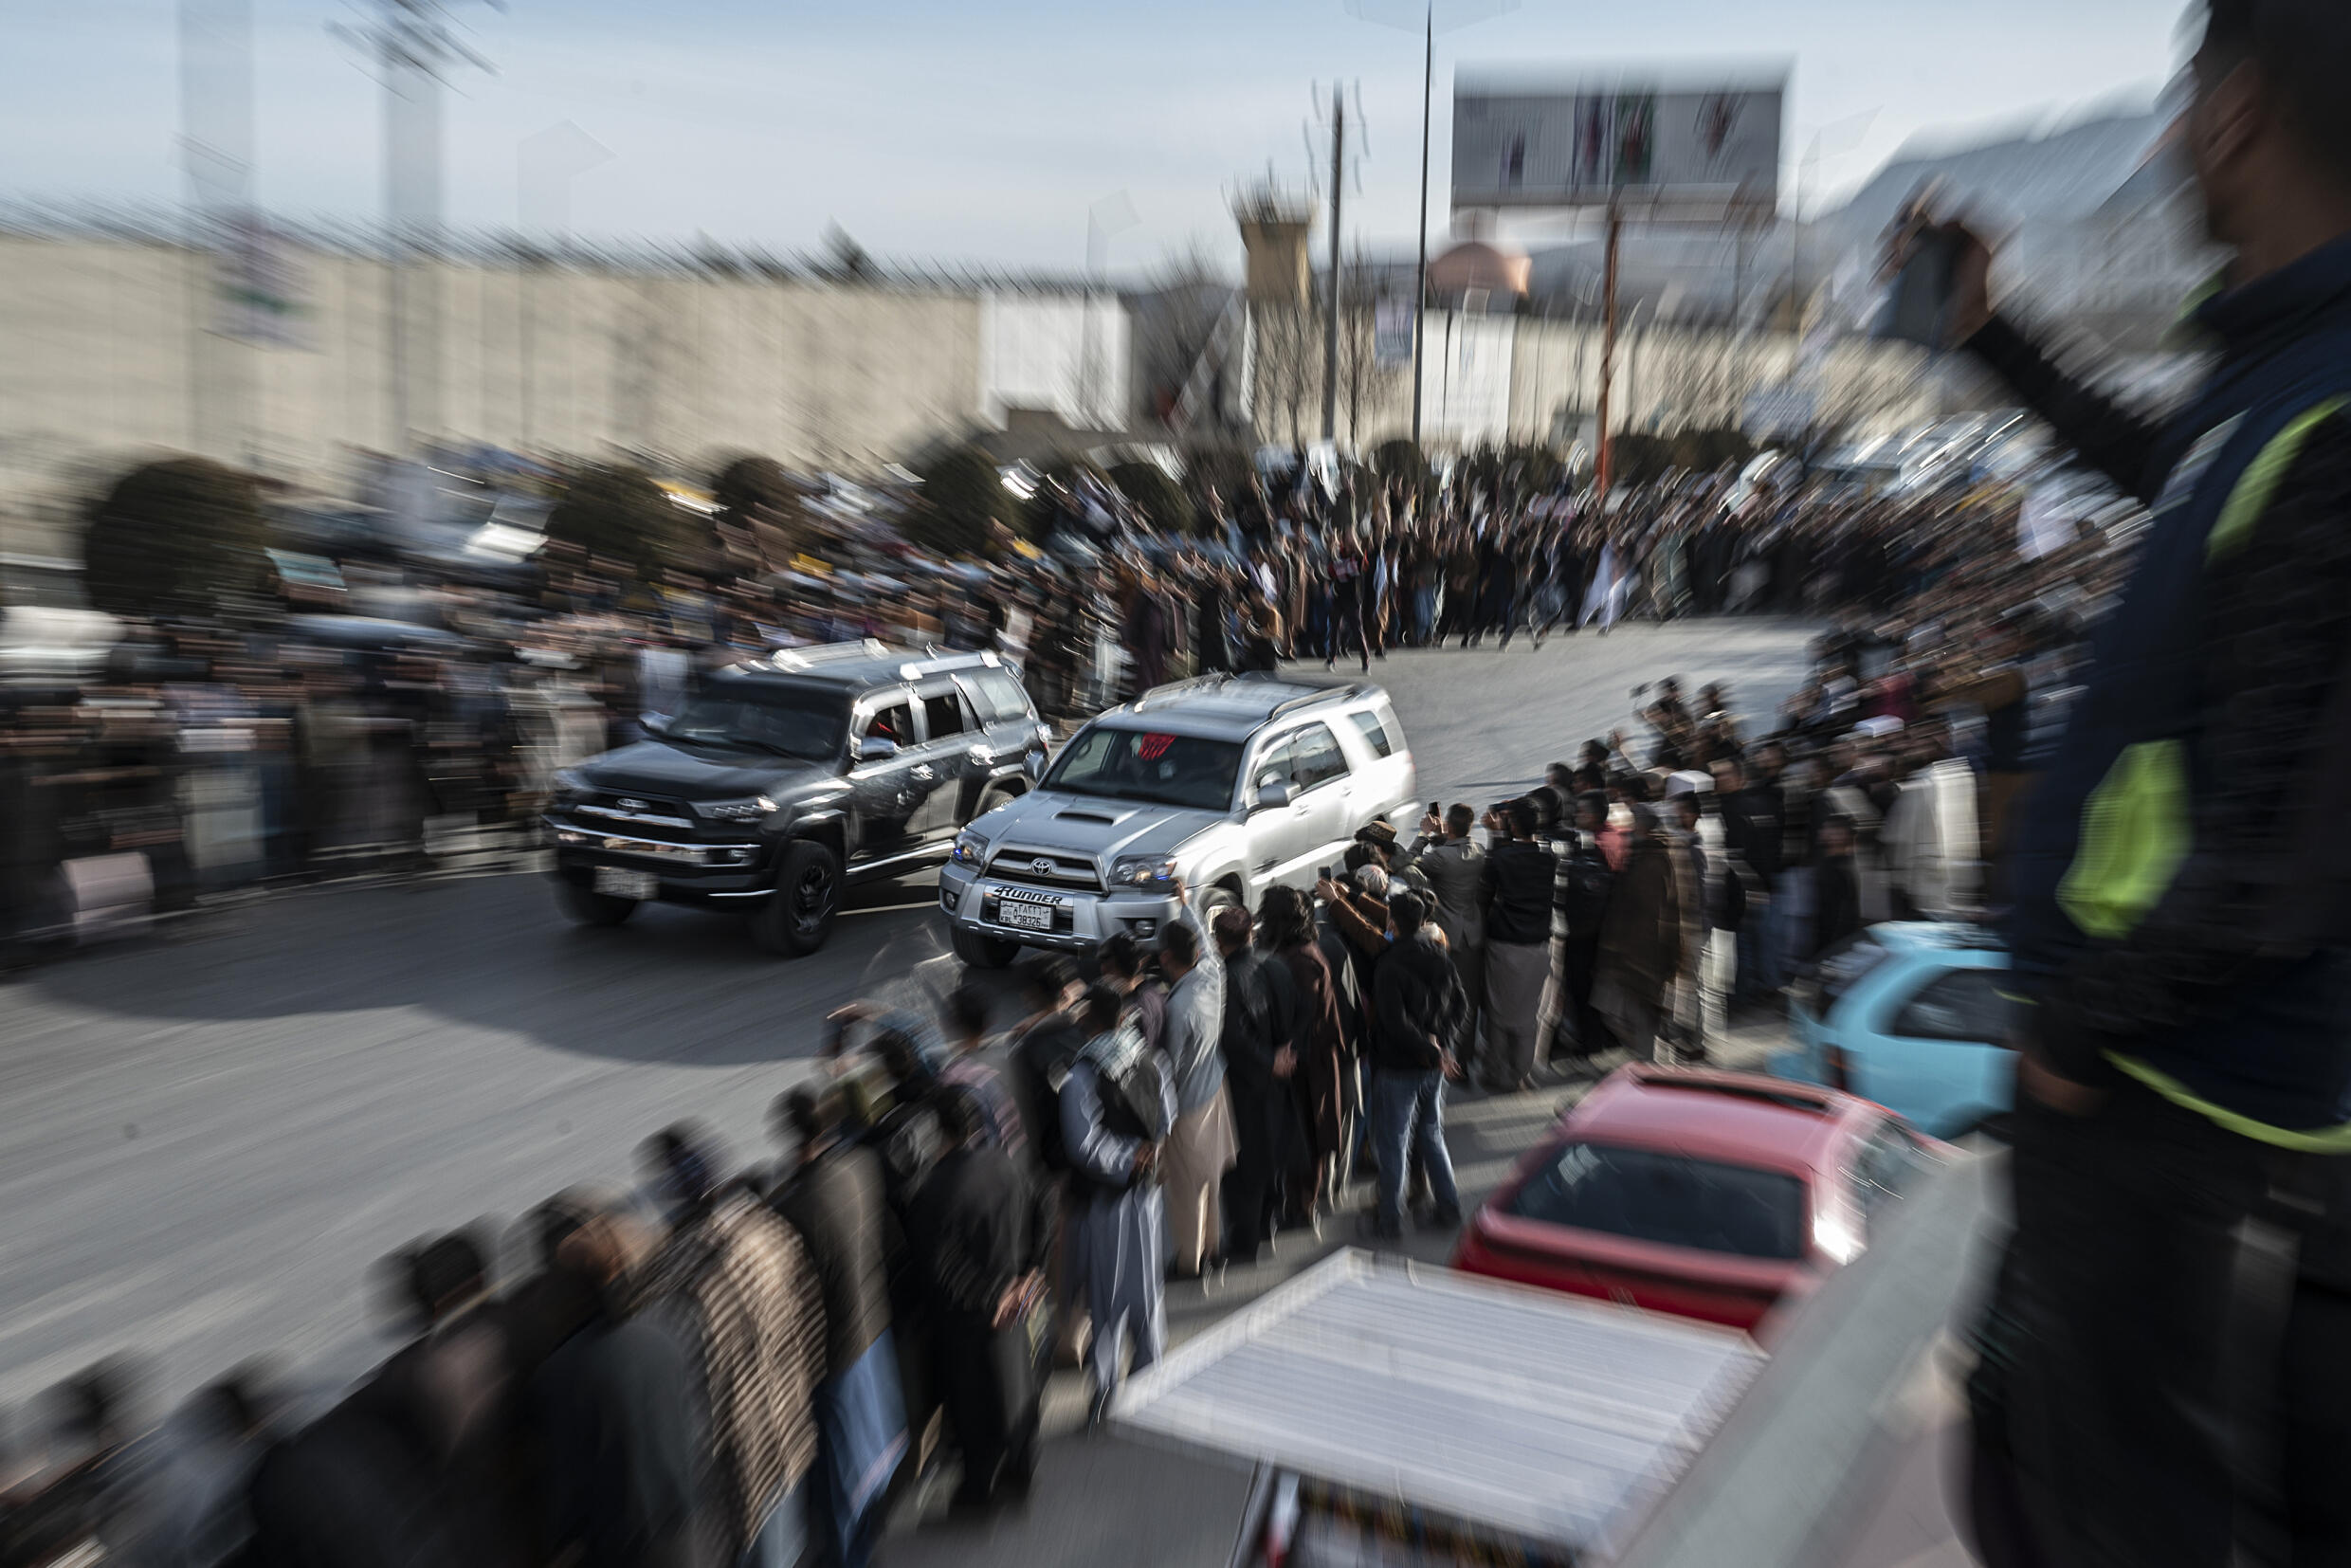 Penonton menyaksikan mobil-mobil yang dimodifikasi berkompetisi dalam perlombaan drag di sepanjang jalan selama acara balap mobil di Kabul.